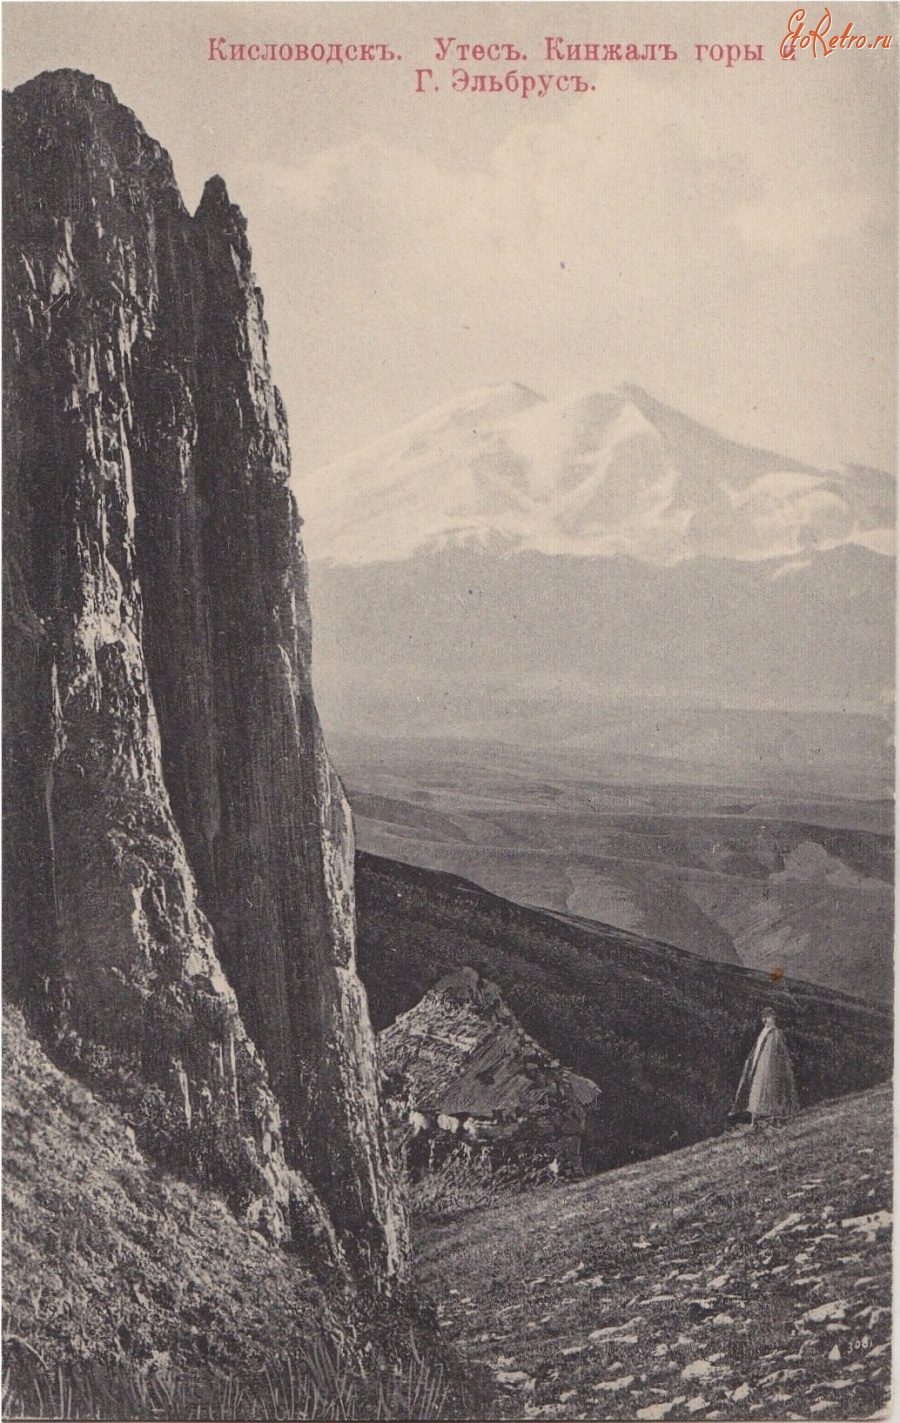 Кисловодск - Утес Кинжал горы и гора Эльбрус